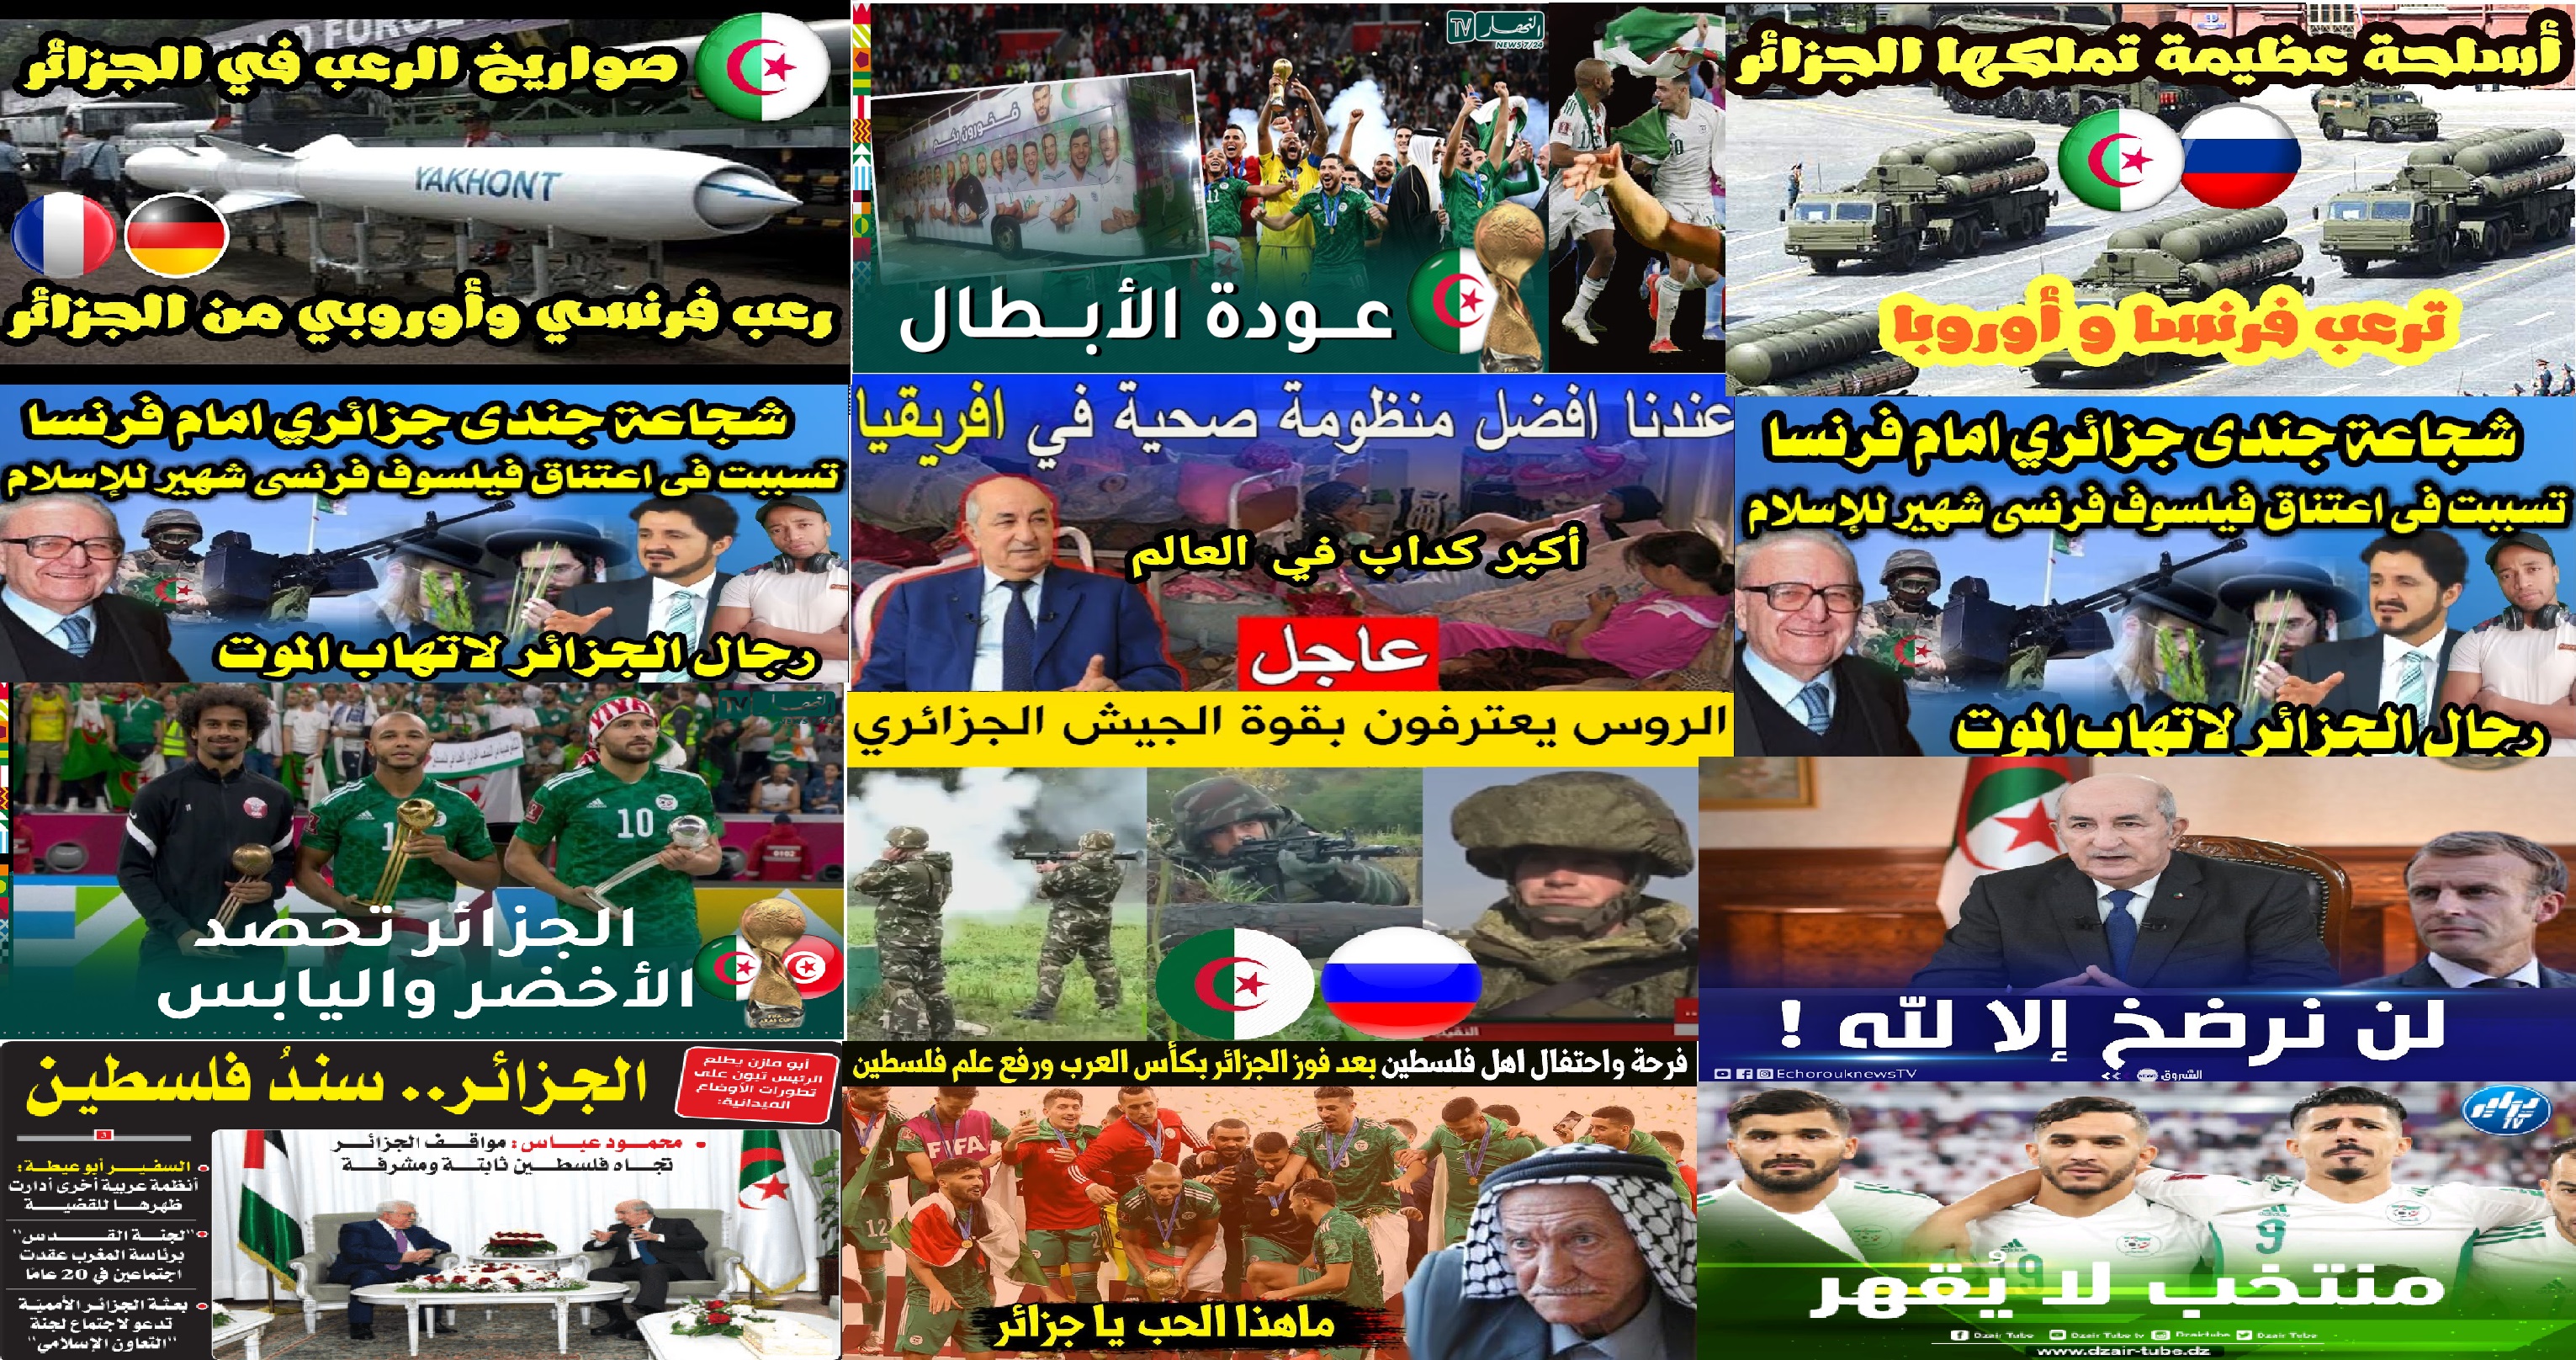 جنون العظمة: “الجزائر الأولى والأقوى والأحسن والأحقّ…” شعار الضُّعف والاستسلام